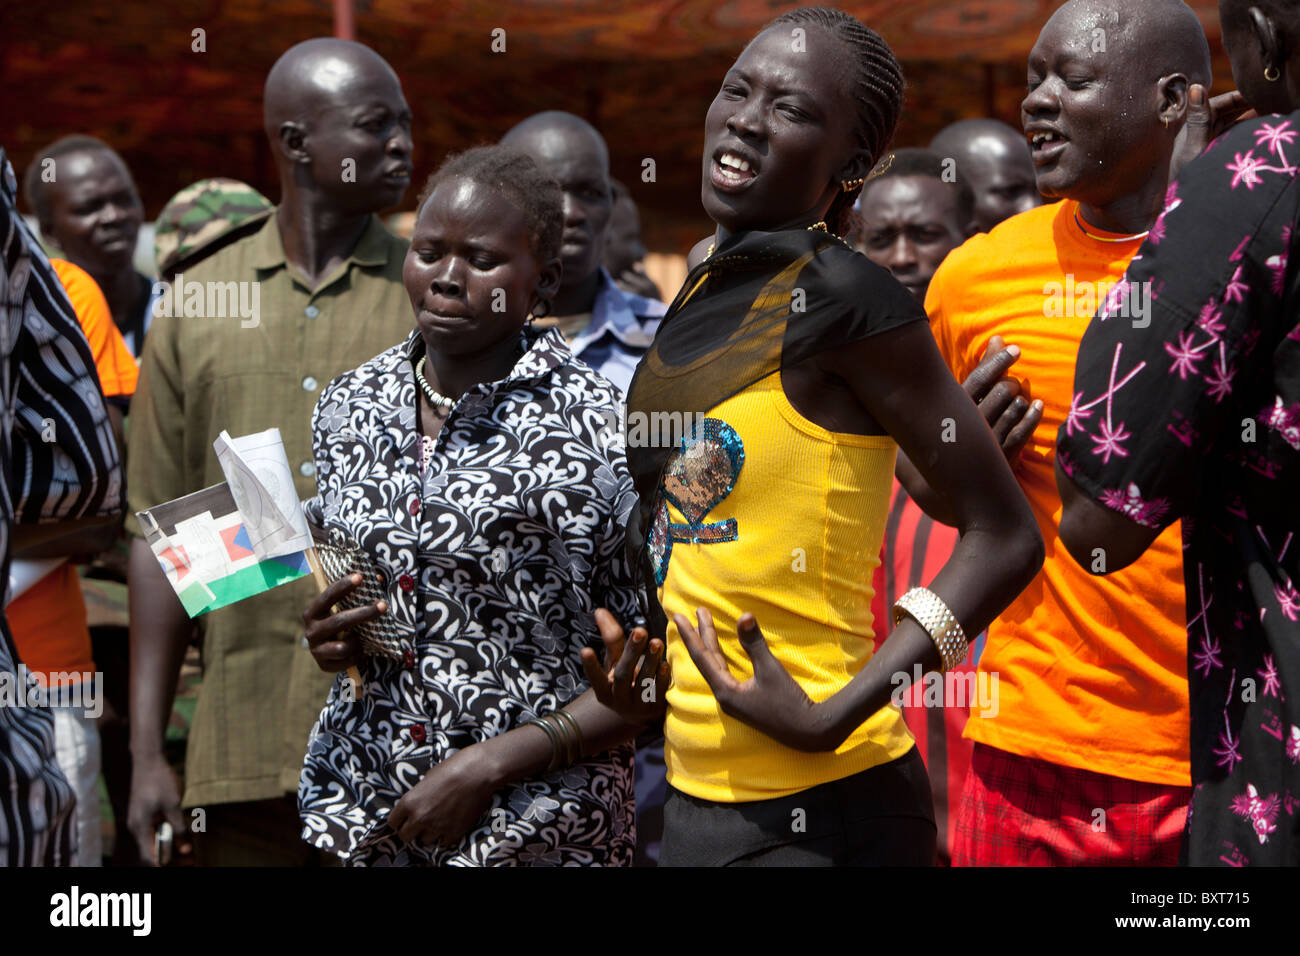 Danzatori tribali prendere parte finale evento indipendenza a Juba per incoraggiare le persone a registrarsi per il 9 gennaio 2011 referendum. Foto Stock